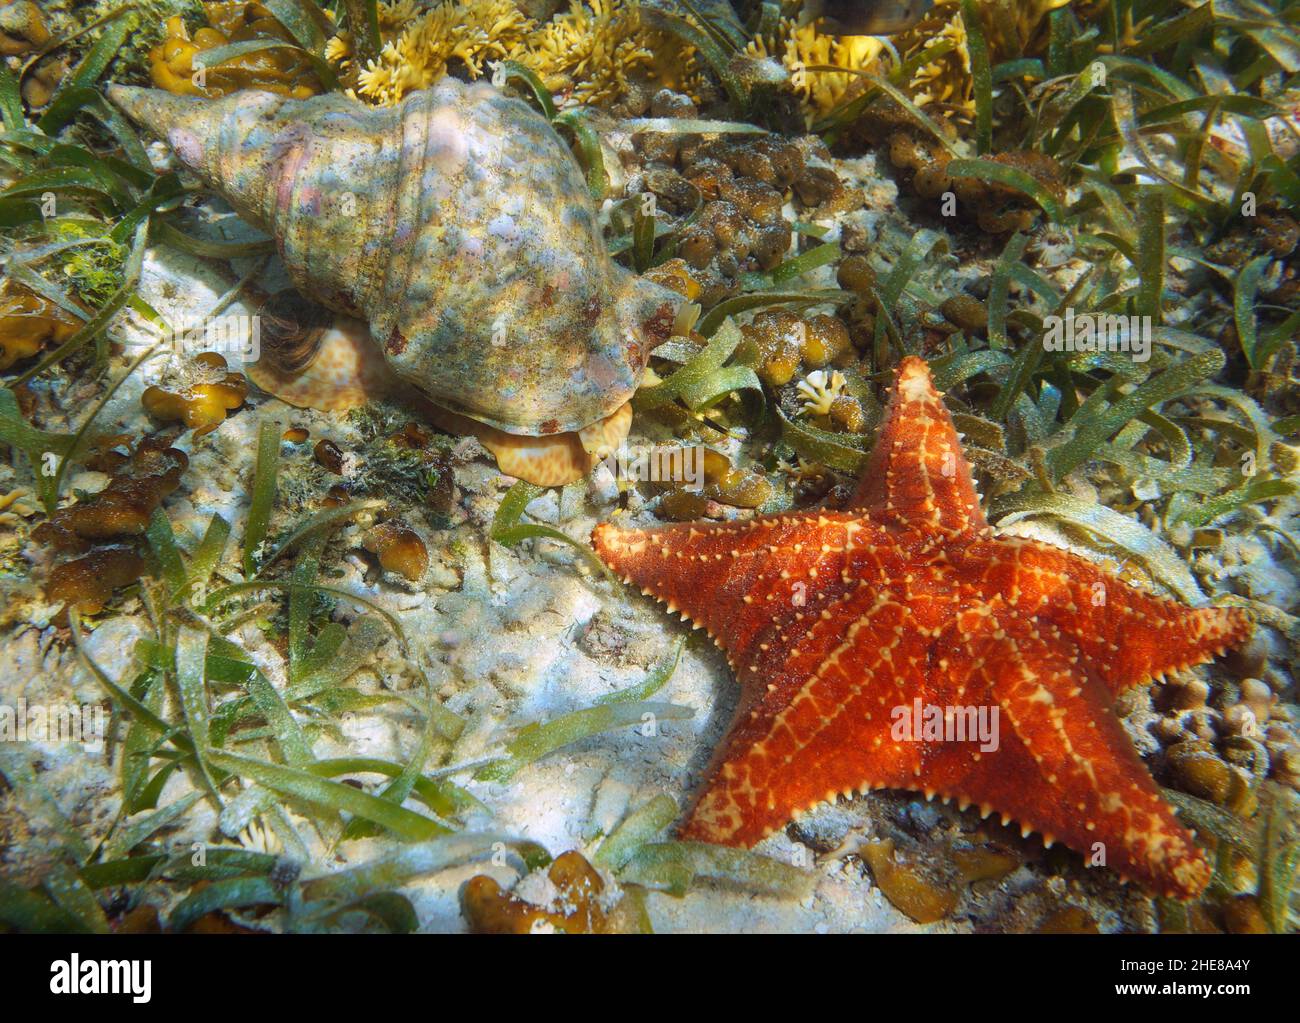 Caracol de mar y pez estrella submarino del mar Caribe (trompeta de triton del Atlántico, Charonia variegata y Cushion sea star, Oreaster reticulatus) Foto de stock